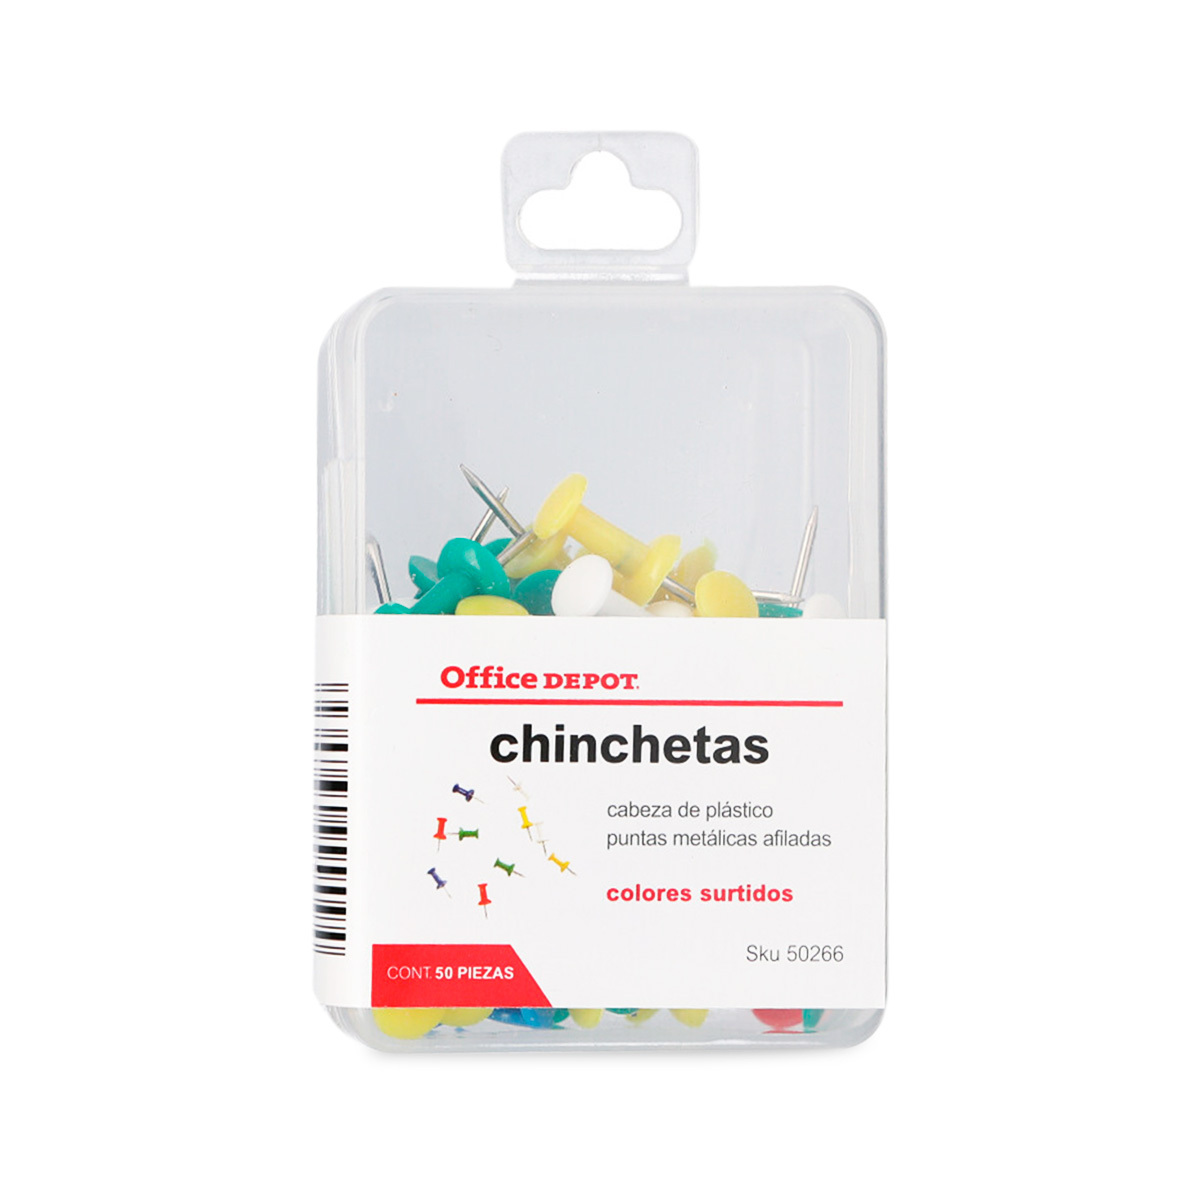 CHINCHETA CORCHO STANDARD DE COLORES 11MM 40U 0,65€